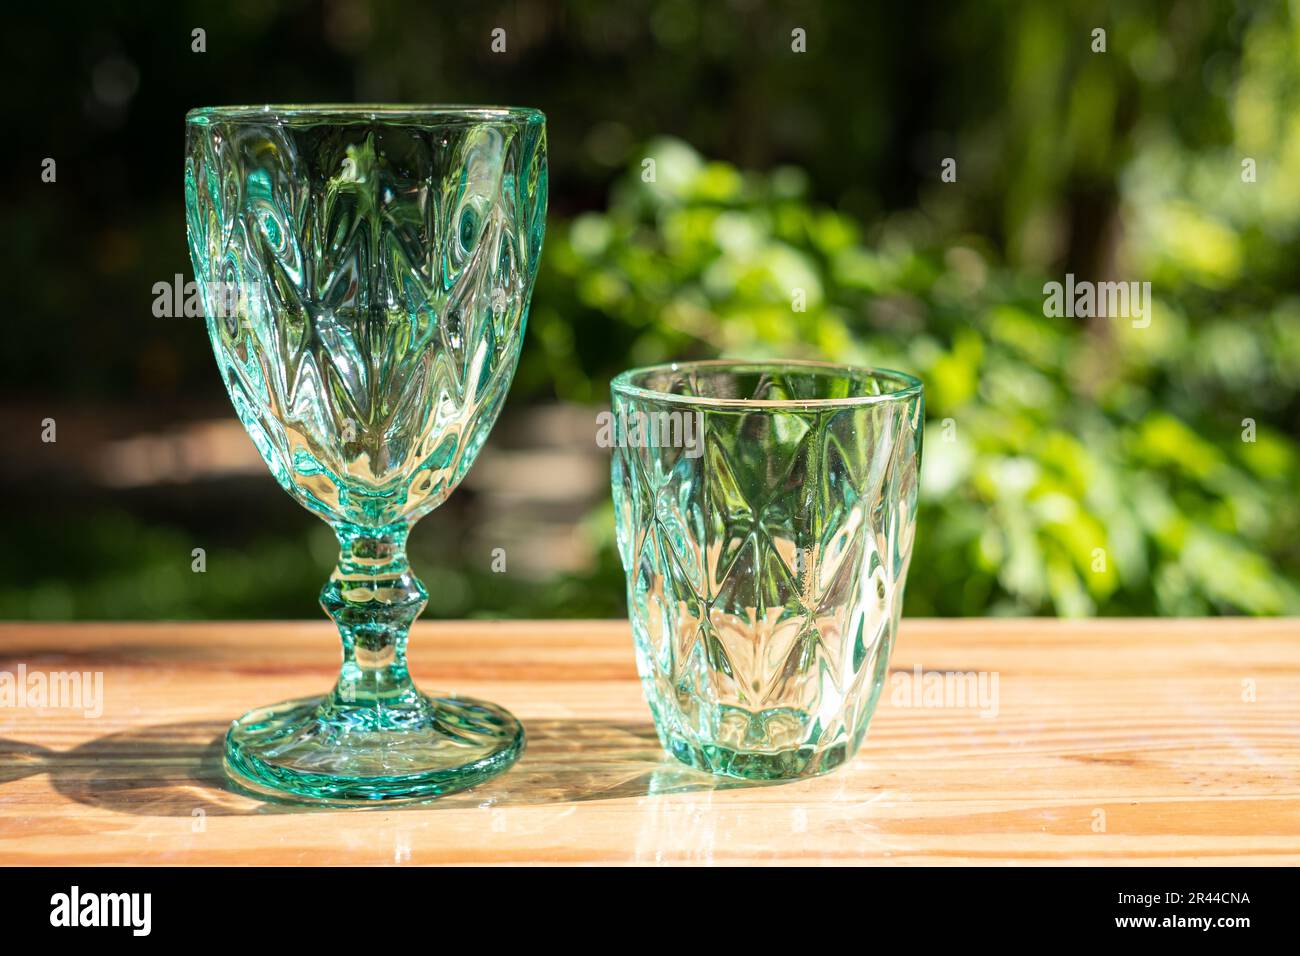 Uranglas oder Saphir-Kristallglas. Grüne Farbtöne Glaswaren klassisches Vintage-Design alte Küchenartikel auf Holztisch Sonnenlicht im Freien reflektiert Stockfoto